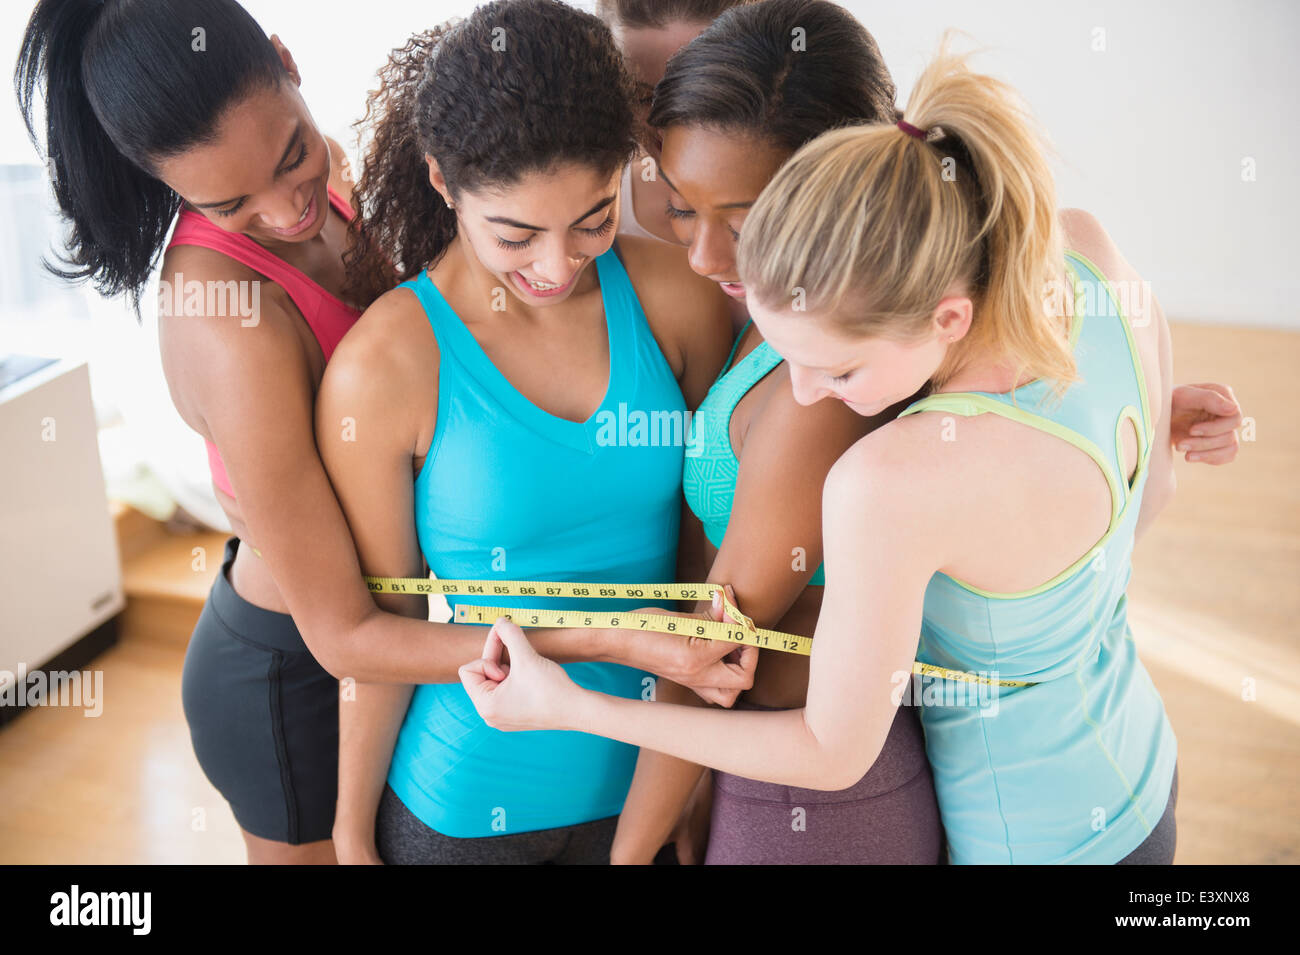 Le donne per la misurazione del loro waistlines insieme Foto Stock